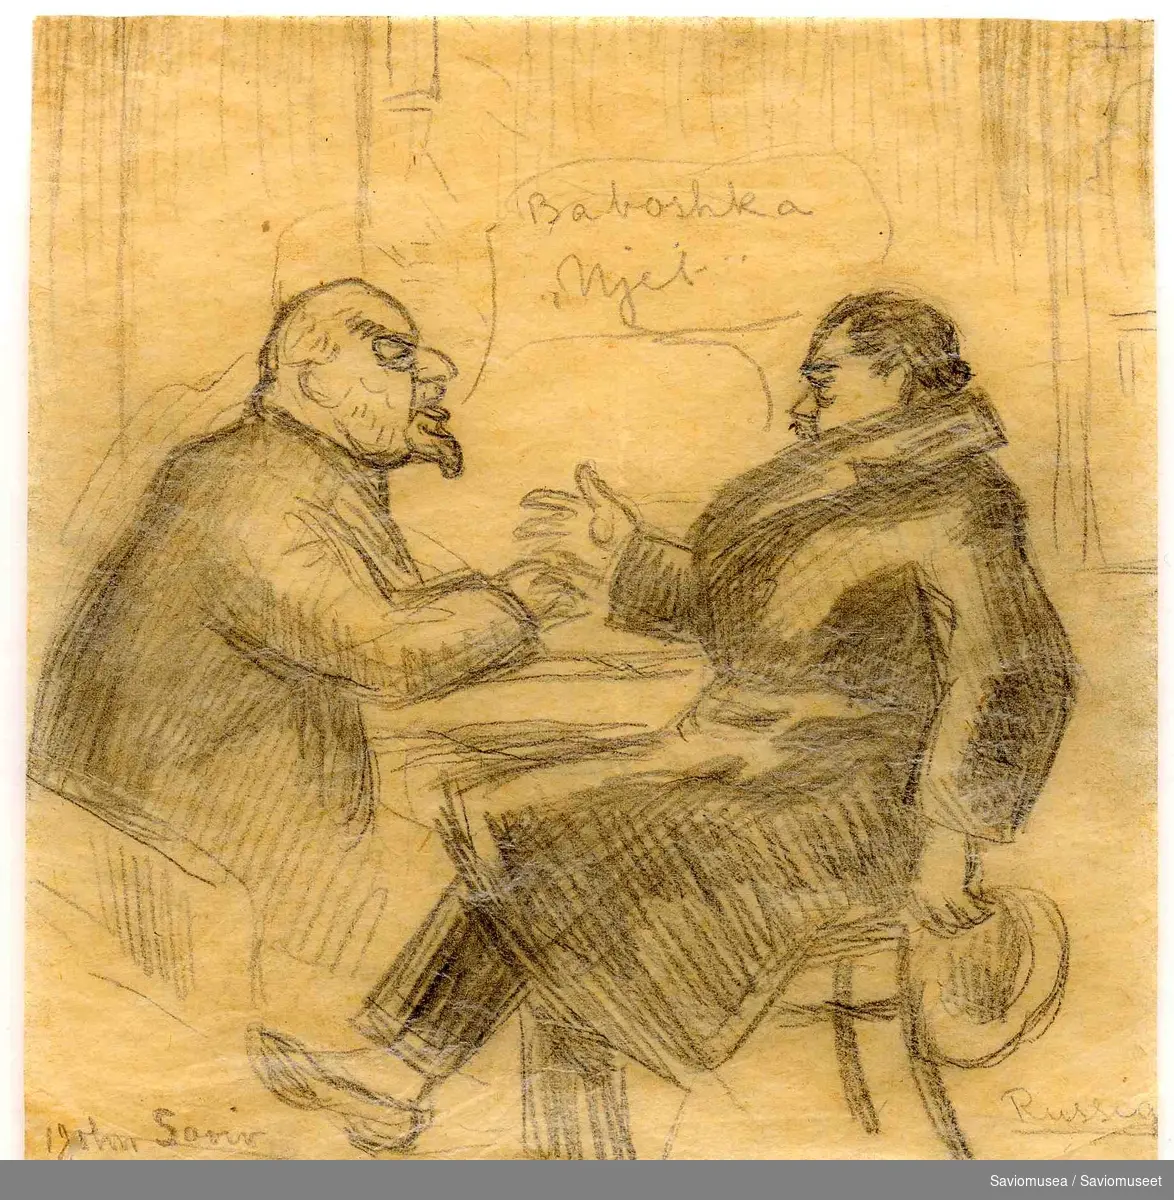 To russiske menn sitter ansikt mot ansikt og prater med hverandre. Begge er i profil, den ene er kledd i frakk og holder hatten sin i hånden, fra den andre kommer det en snakkeboble der det står "Baboshka, njet"